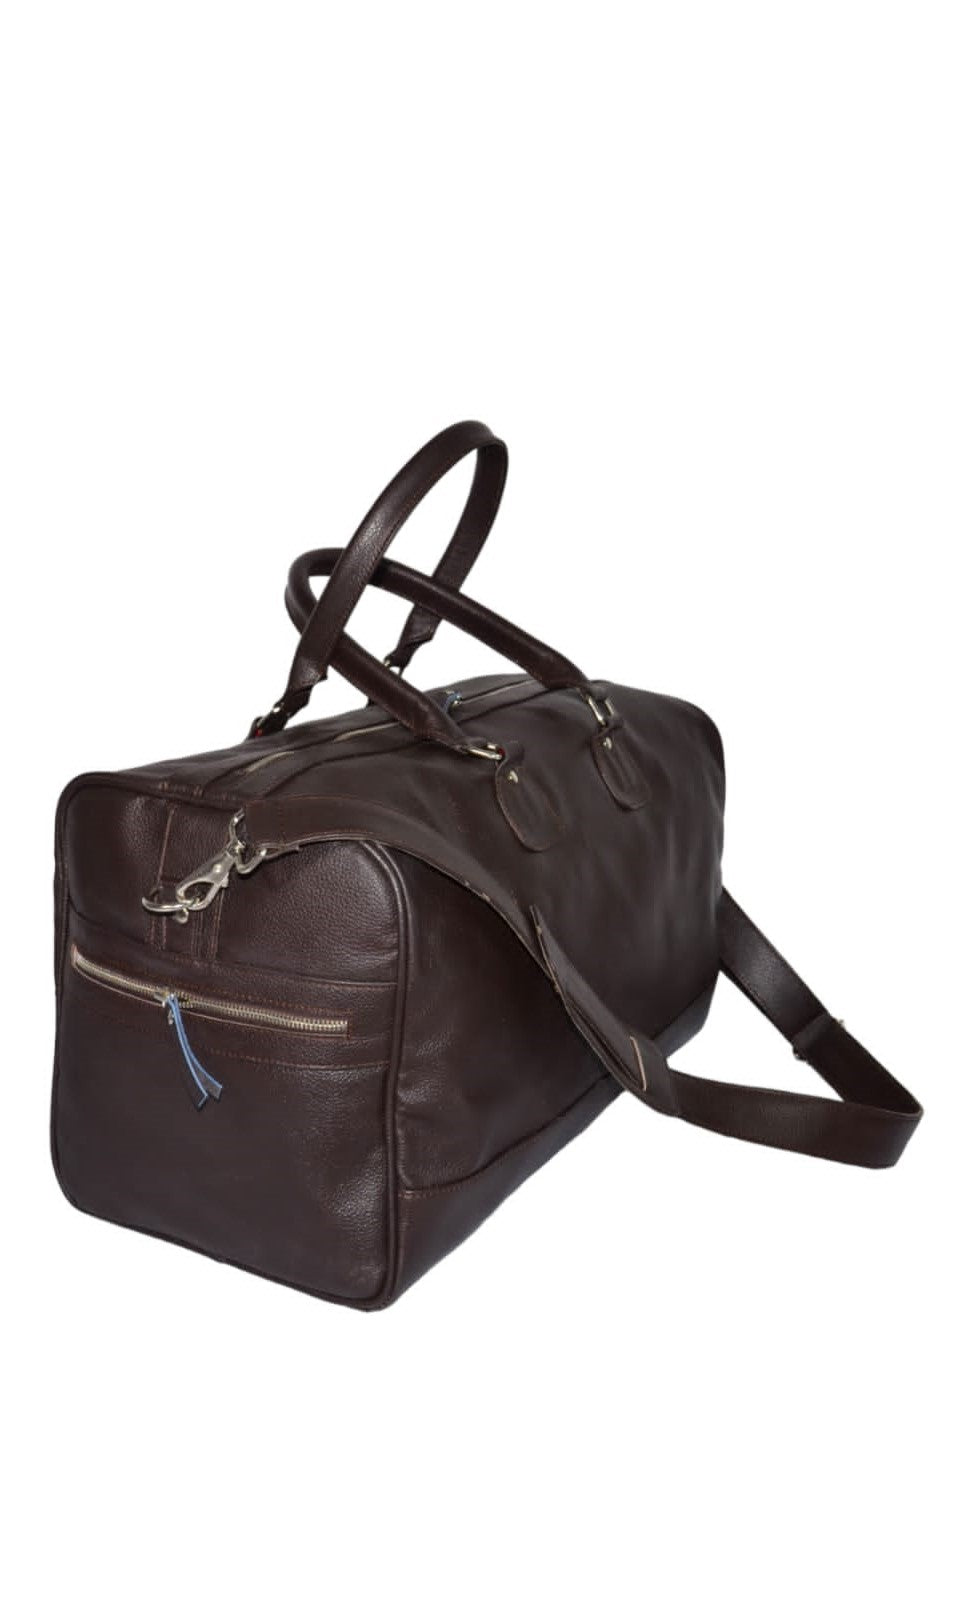 Brown Genuine Cow Leather Duffel Travel Bag, Weekender Bag